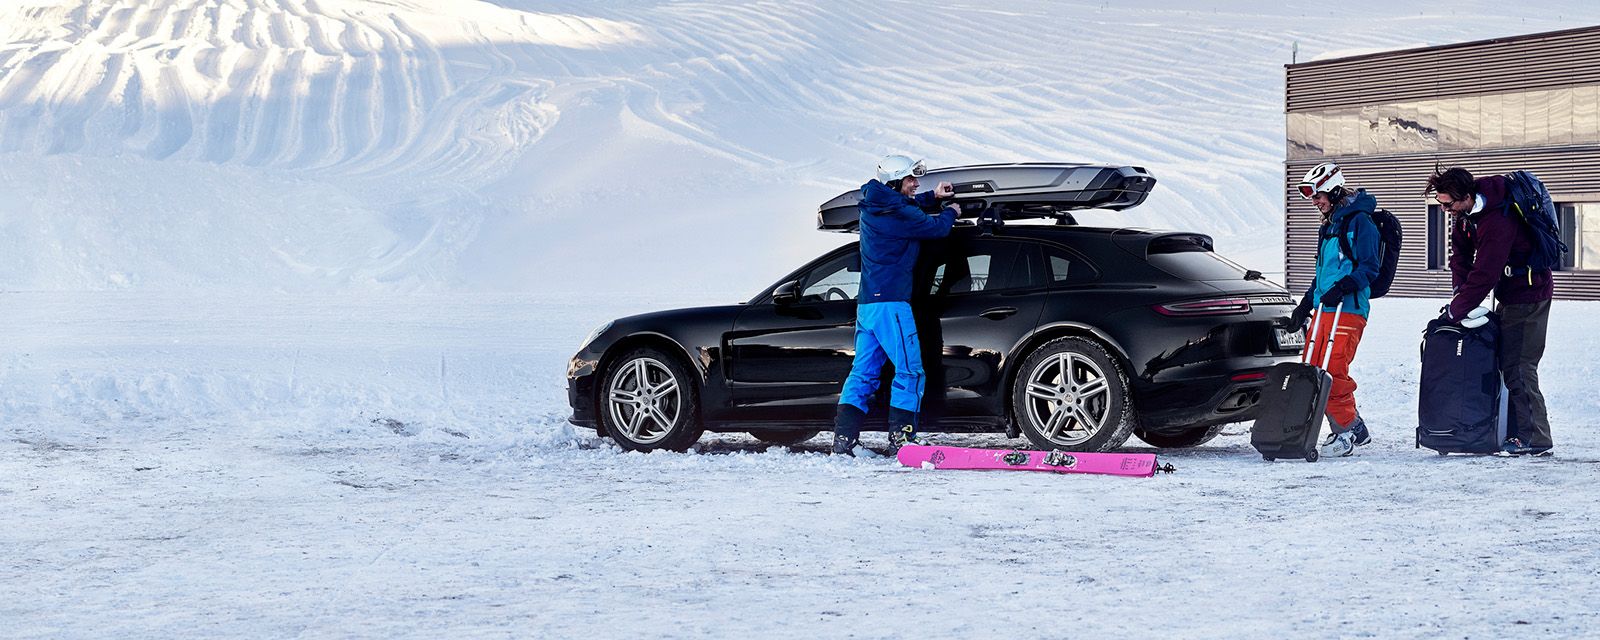 I snevejr ses to mennesker med skiudstyr. De er ved at laste deres ting ind i en bil og en tagboks.